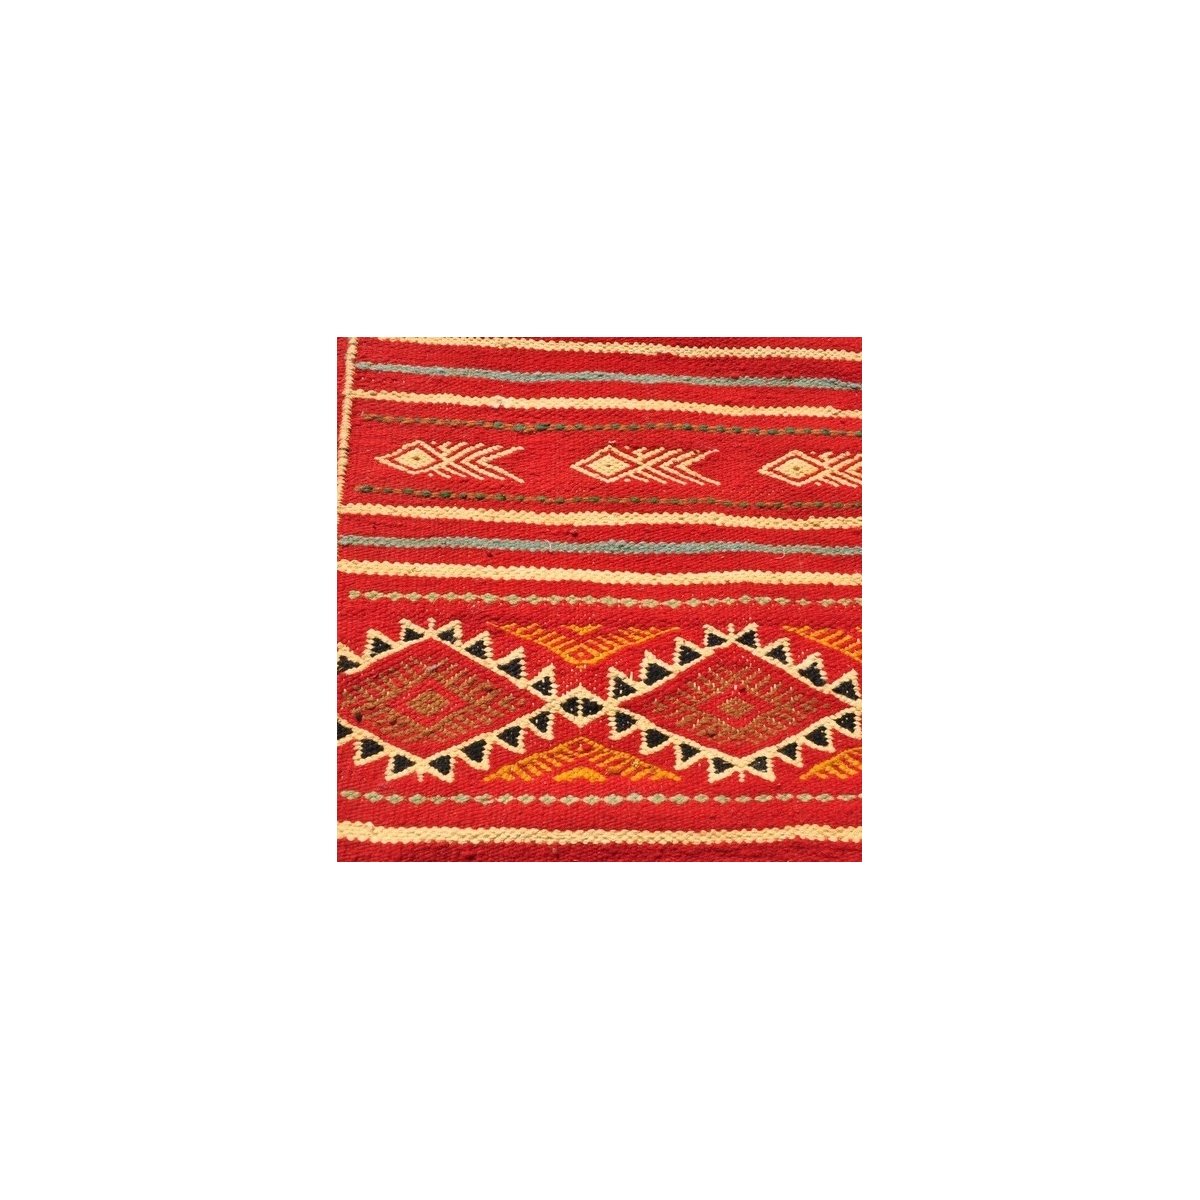 Tapete berbere Tapete Kilim longo Midoun 75x205 Multicor (Tecidos à mão, Lã) Tapete tunisiano kilim, estilo marroquino. Tapete r